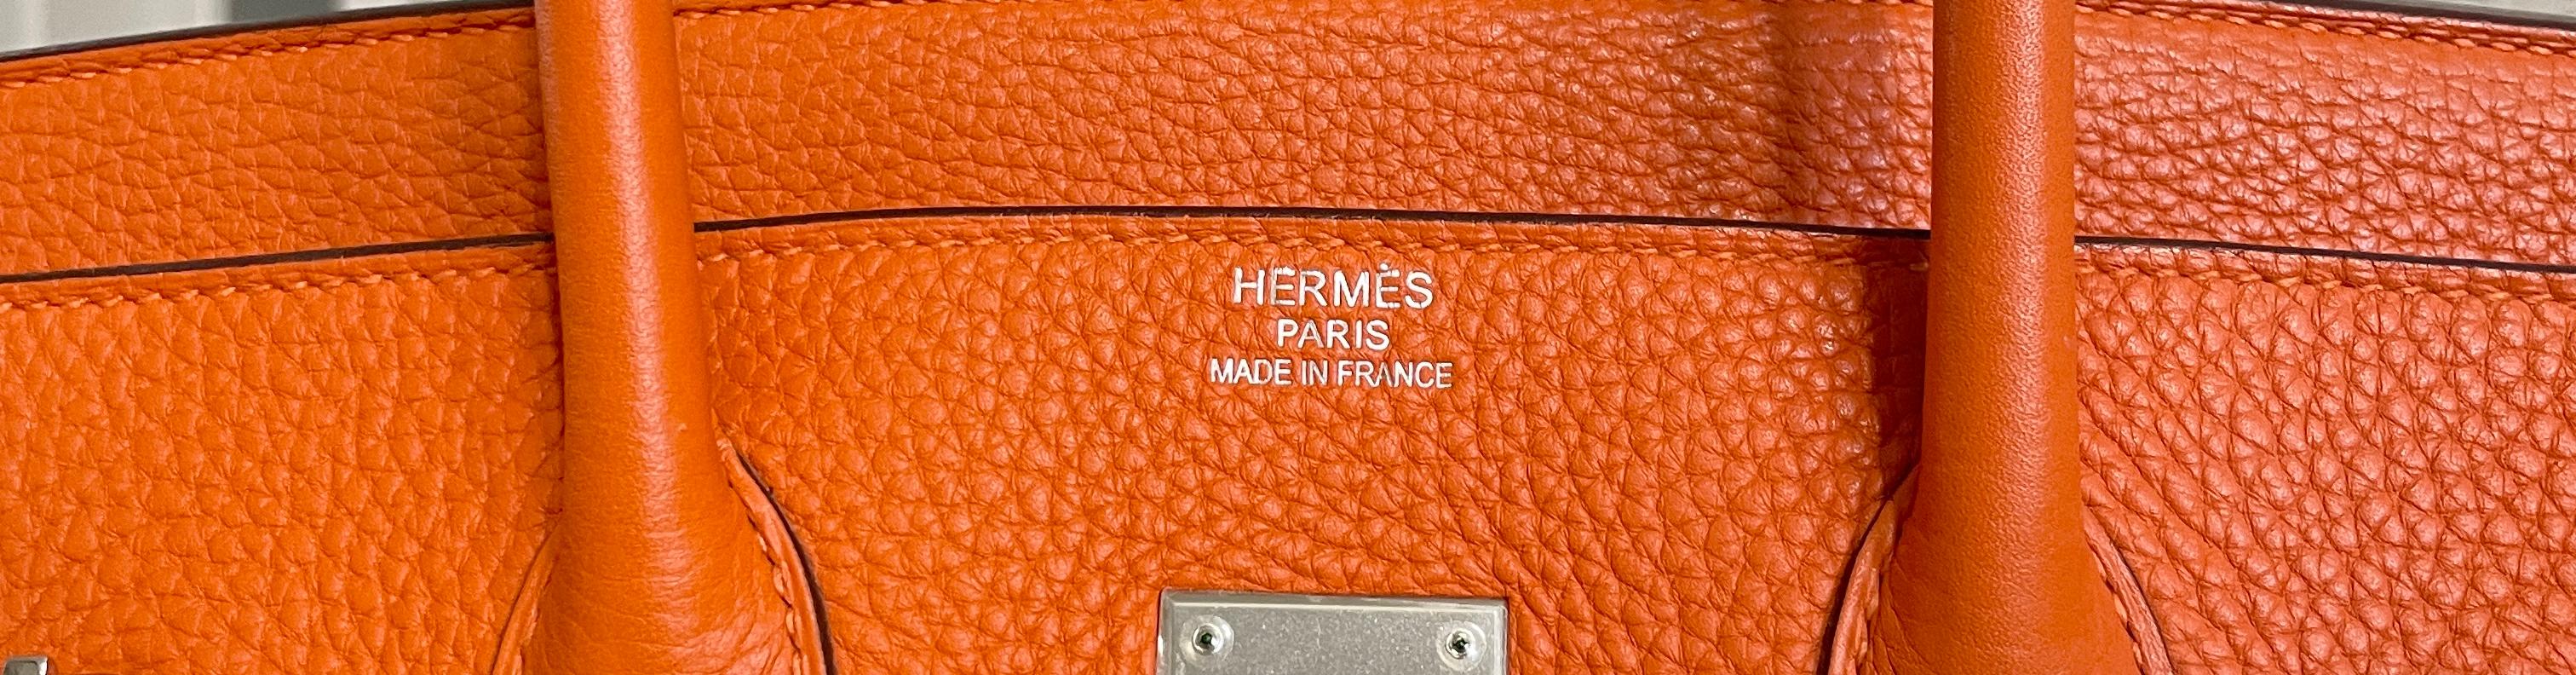 Hermès Orange Togo 35 cm Birkin with Palladium In Good Condition In Palm Beach, FL